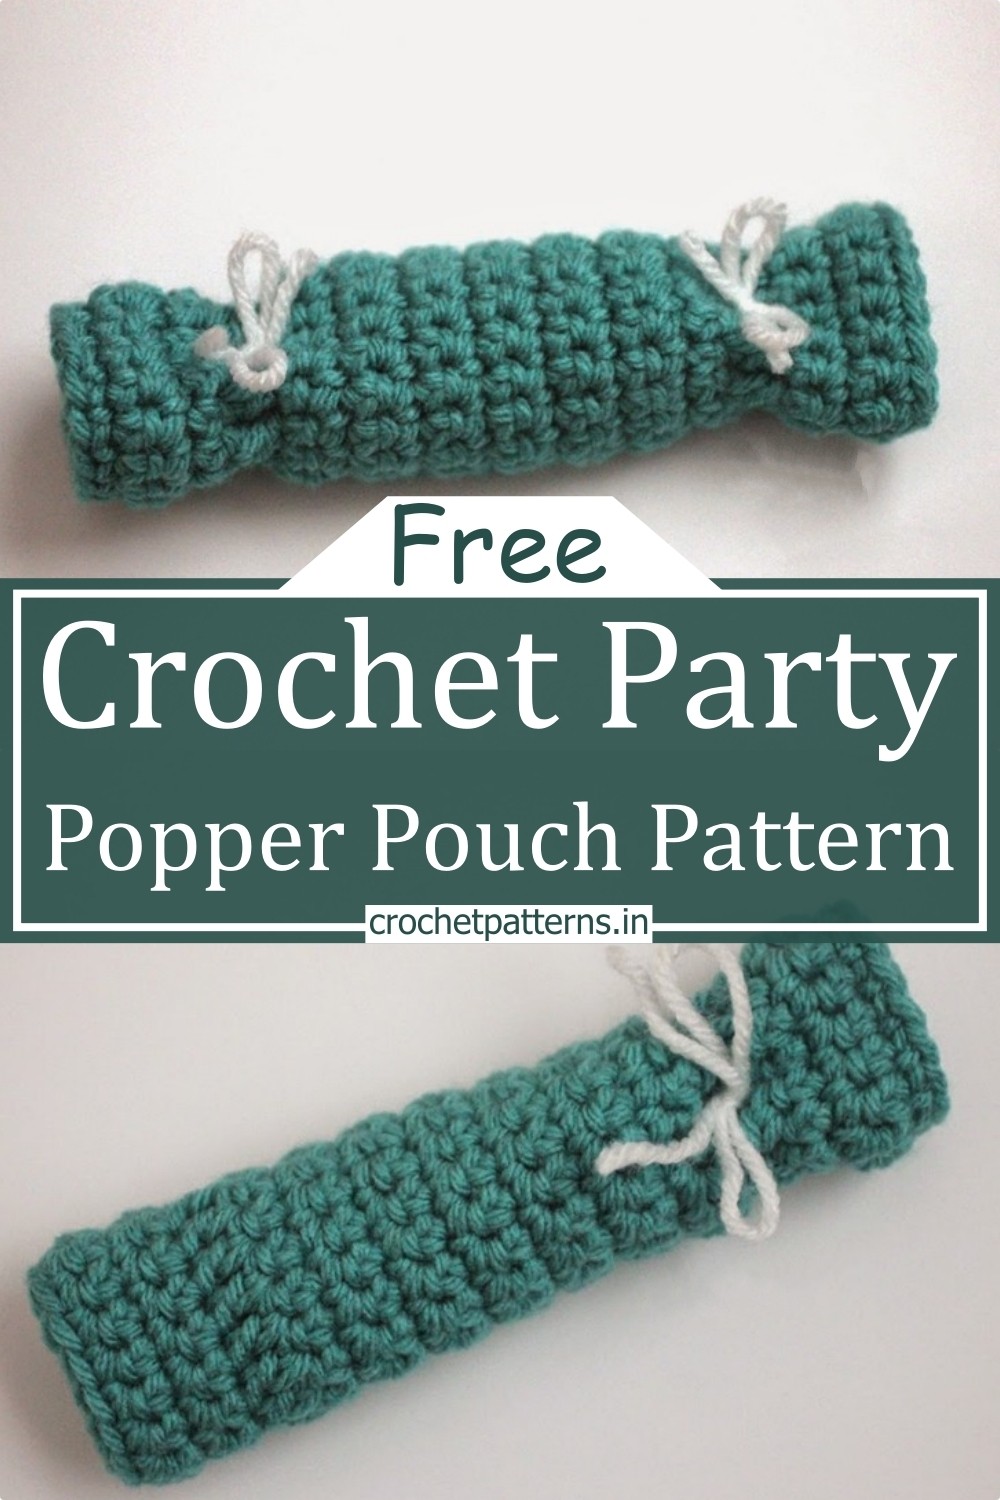 Crochet Party Popper Pouch Pattern